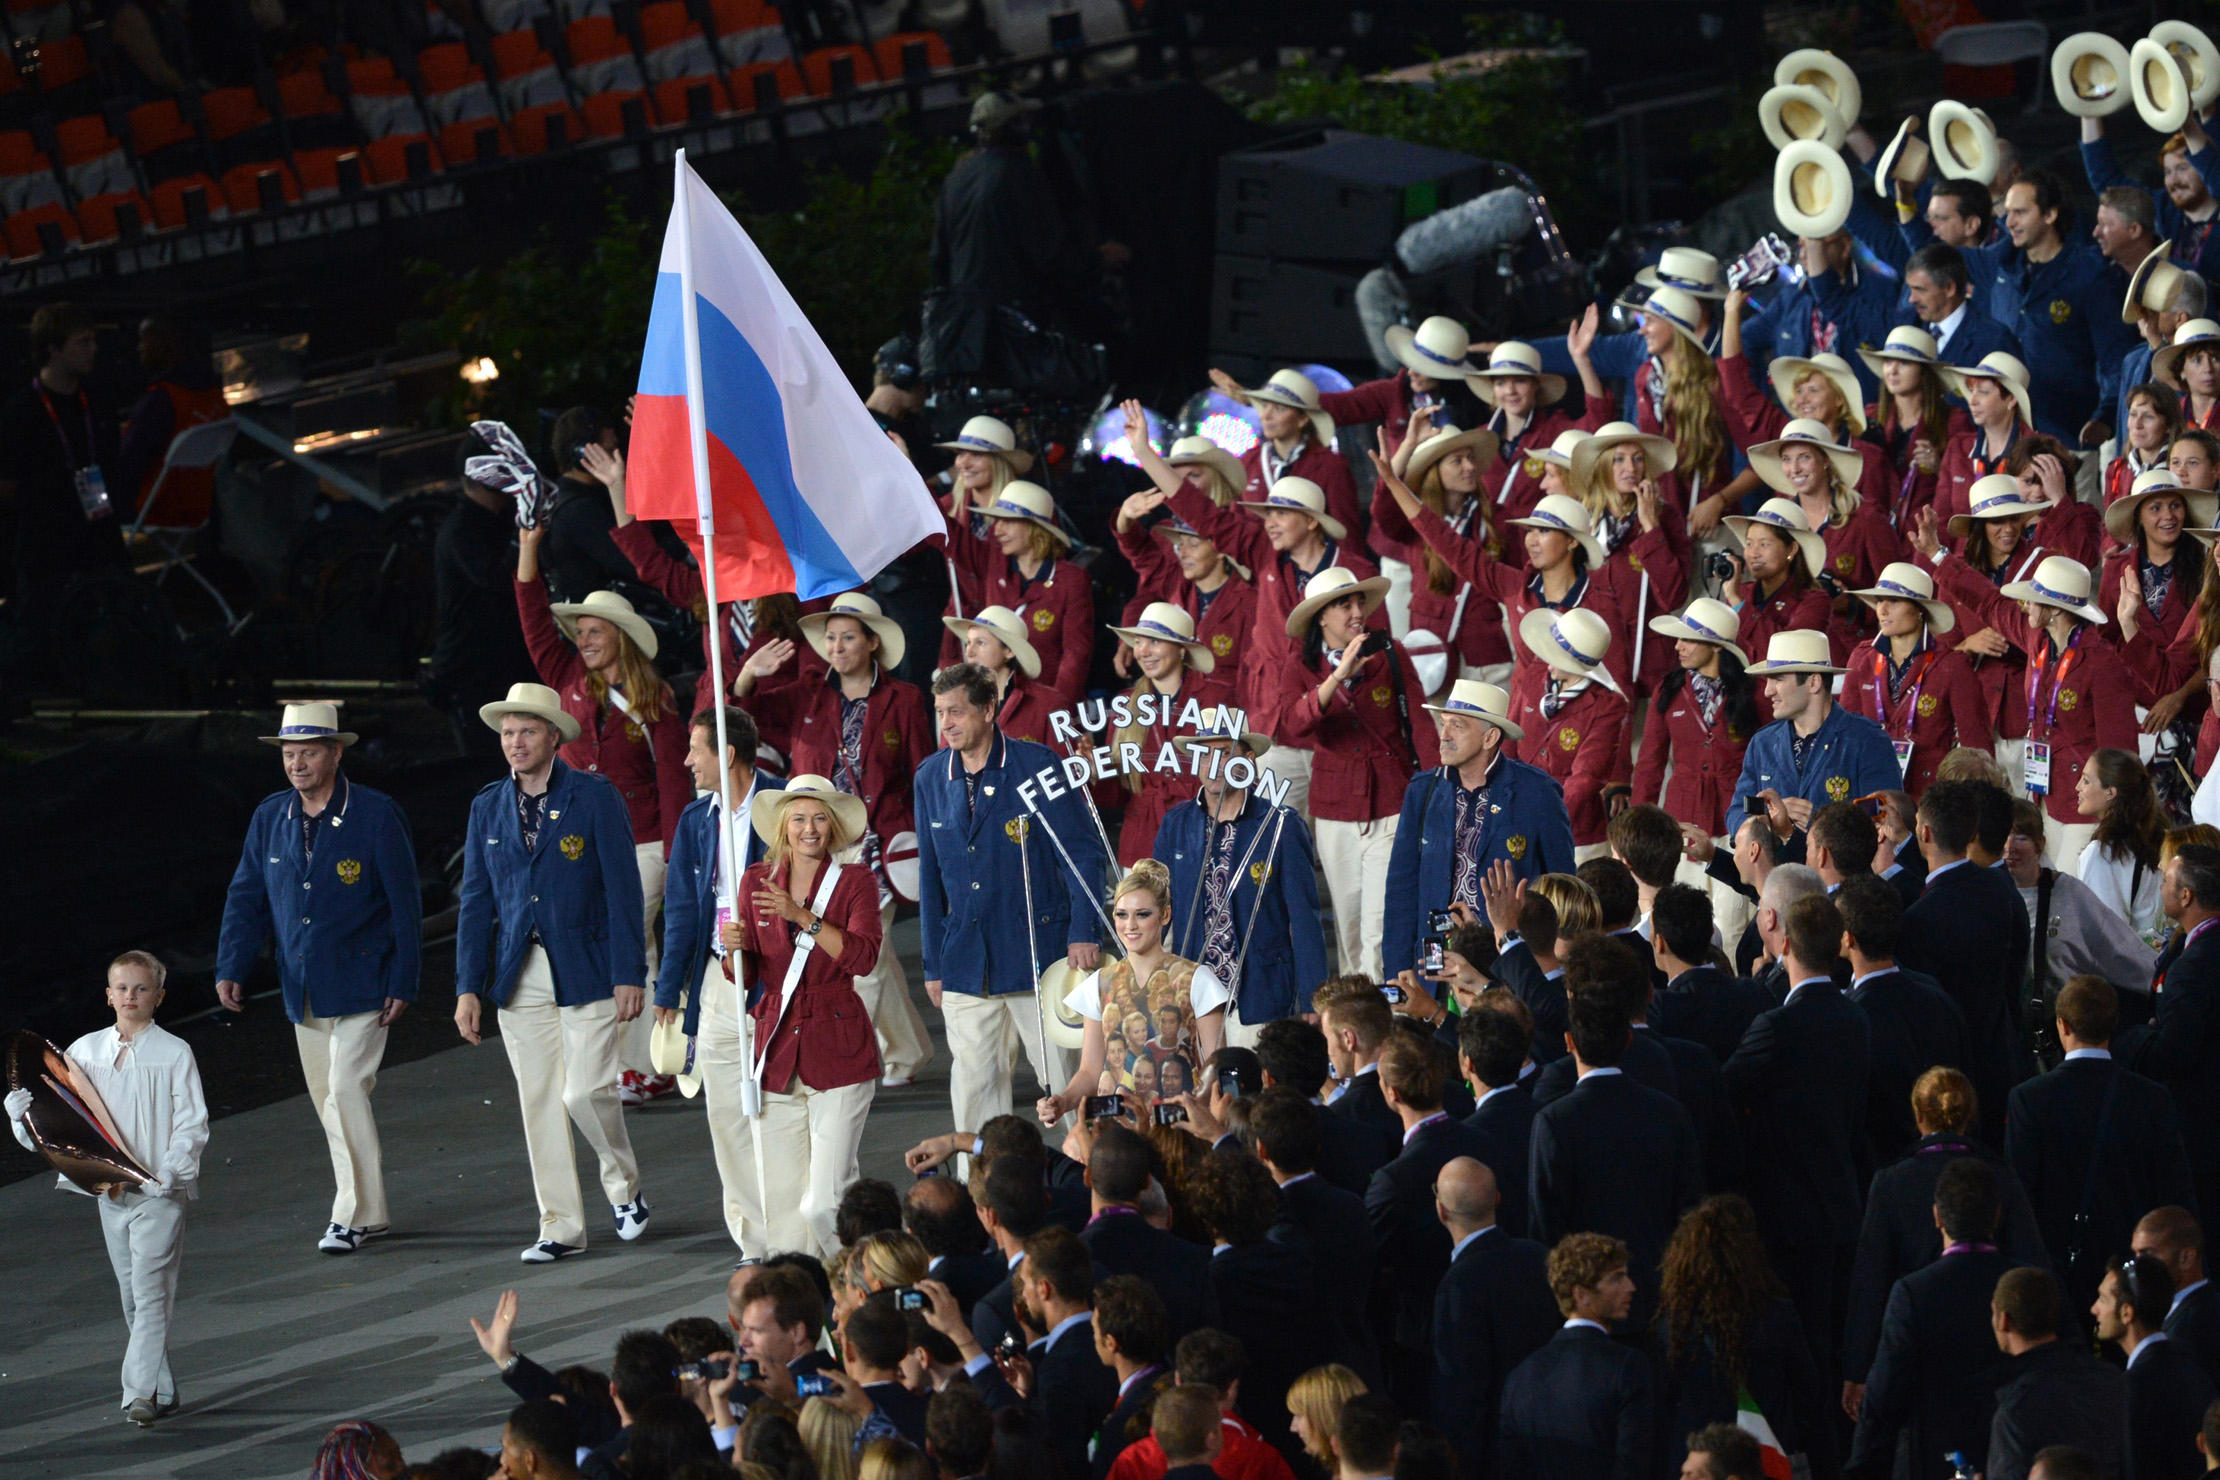 المپیک ریو 2016؛ هر آنچه باید در مورد کاروان روسیه در المپیک بدانید